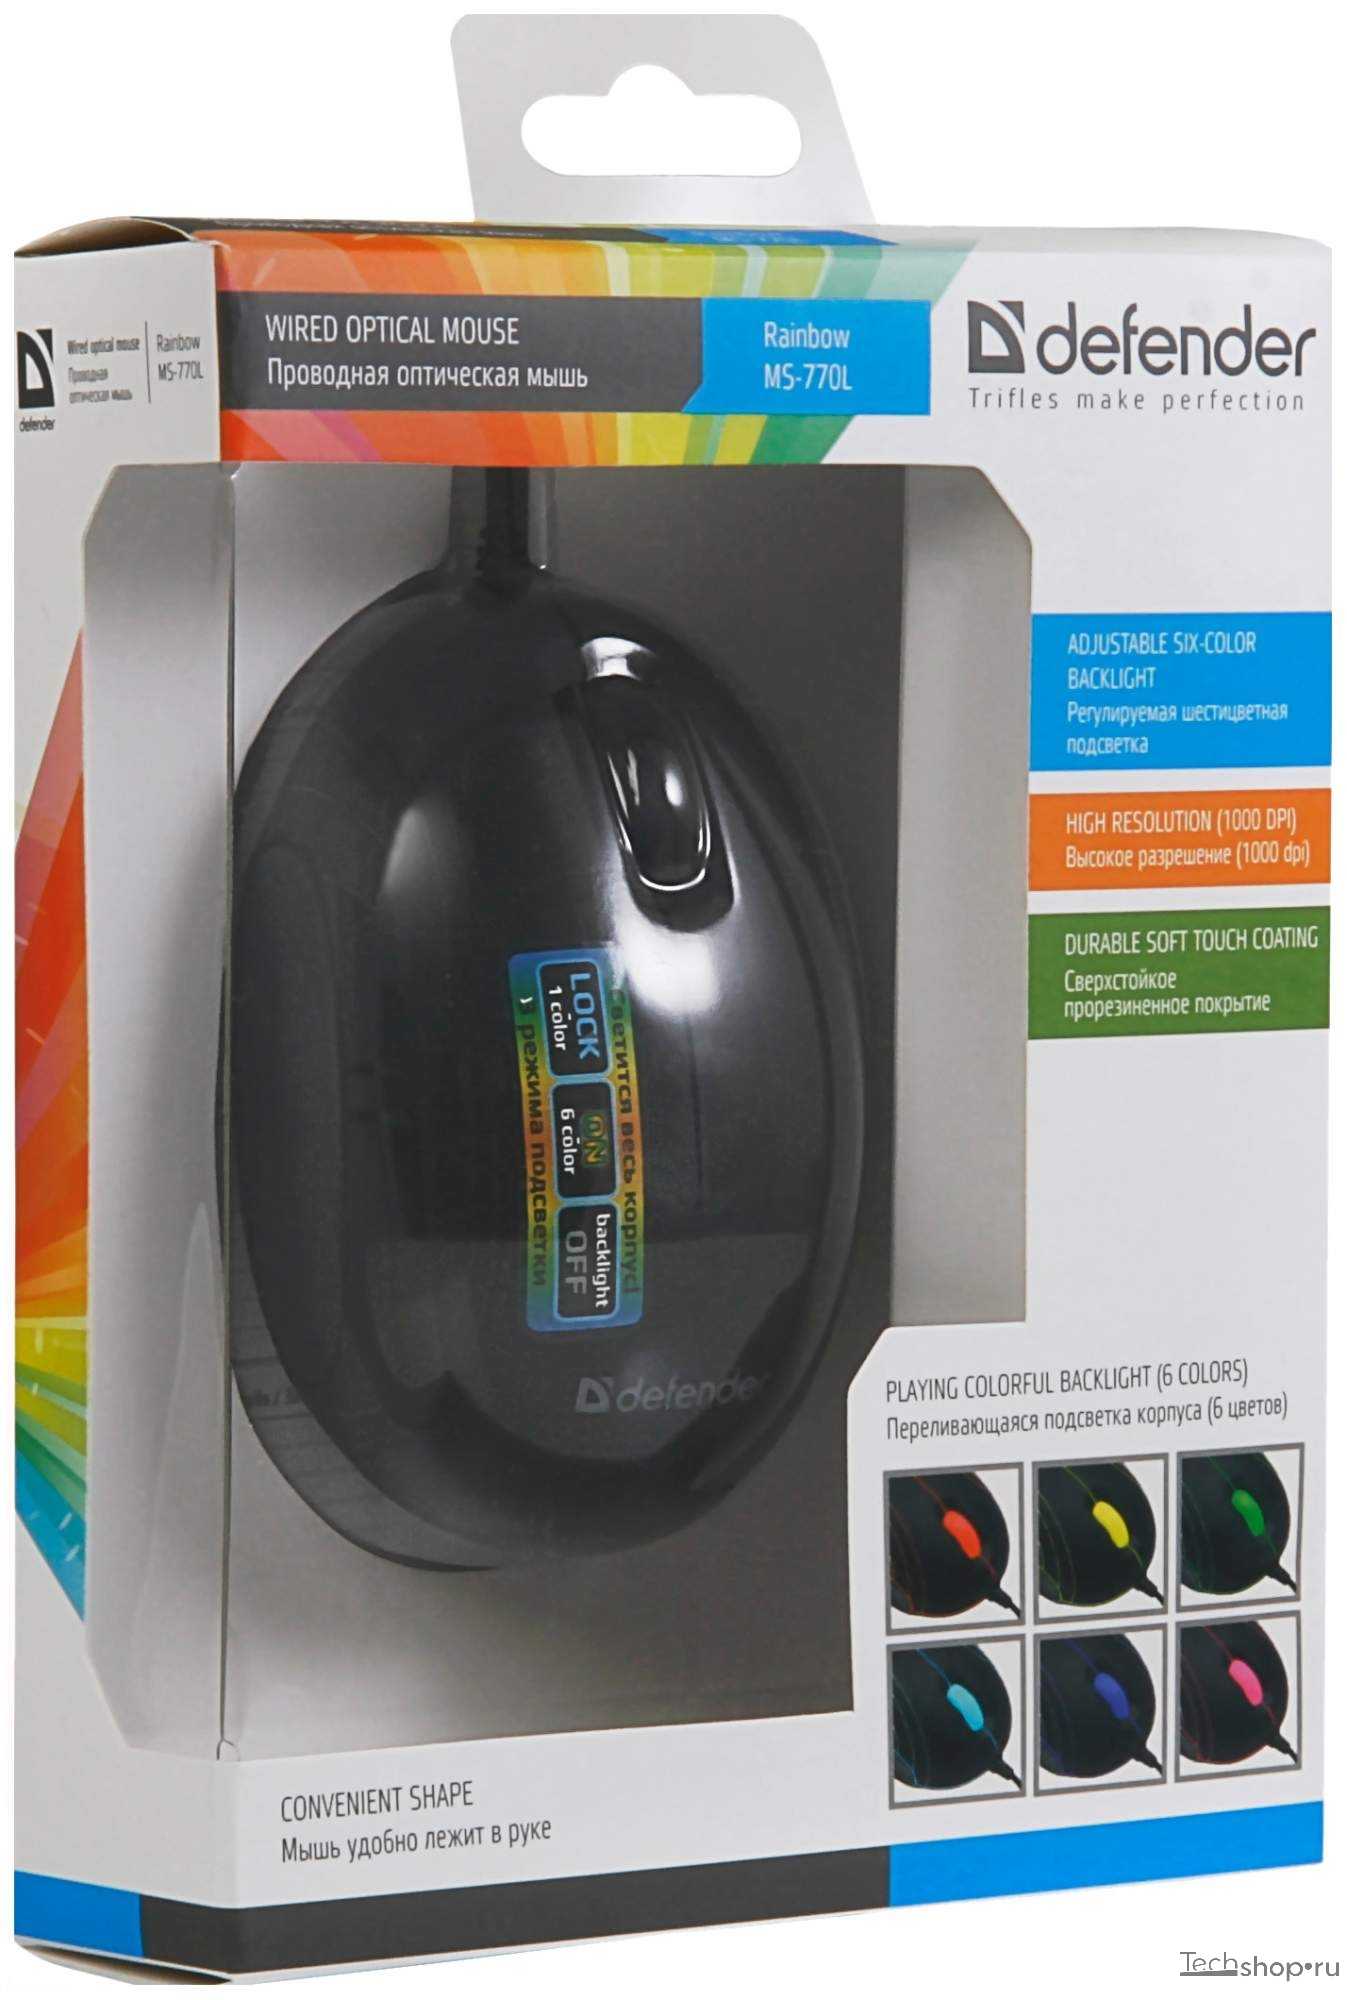 Мышь проводная defender rainbow ms-770l chrome (серебристый) купить от 400 руб в челябинске, сравнить цены, отзывы, видео обзоры и характеристики